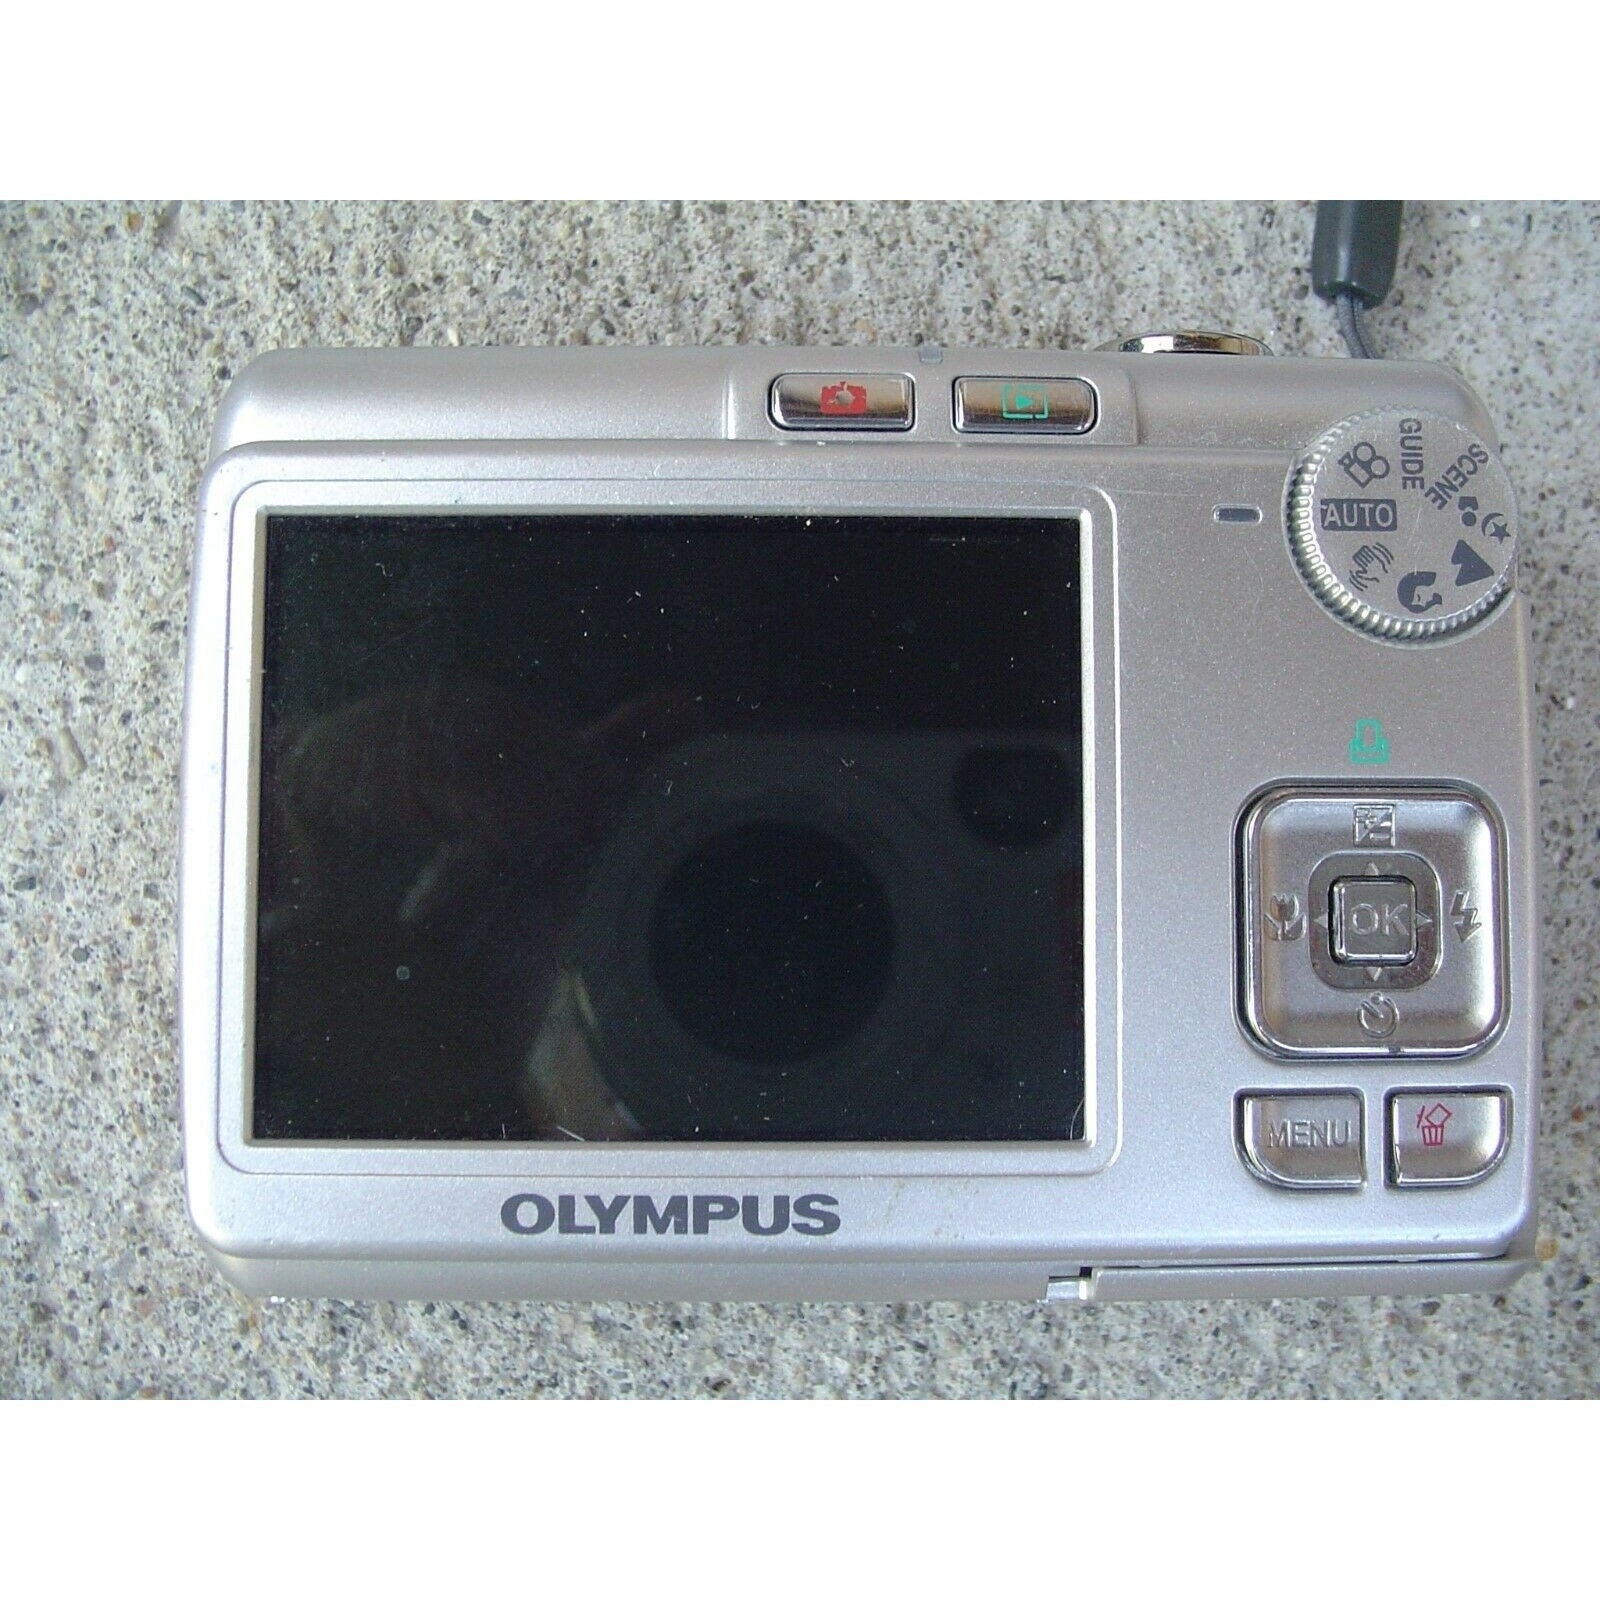 Olympus FE FE-210 7.1MP Digital Camera - Silver